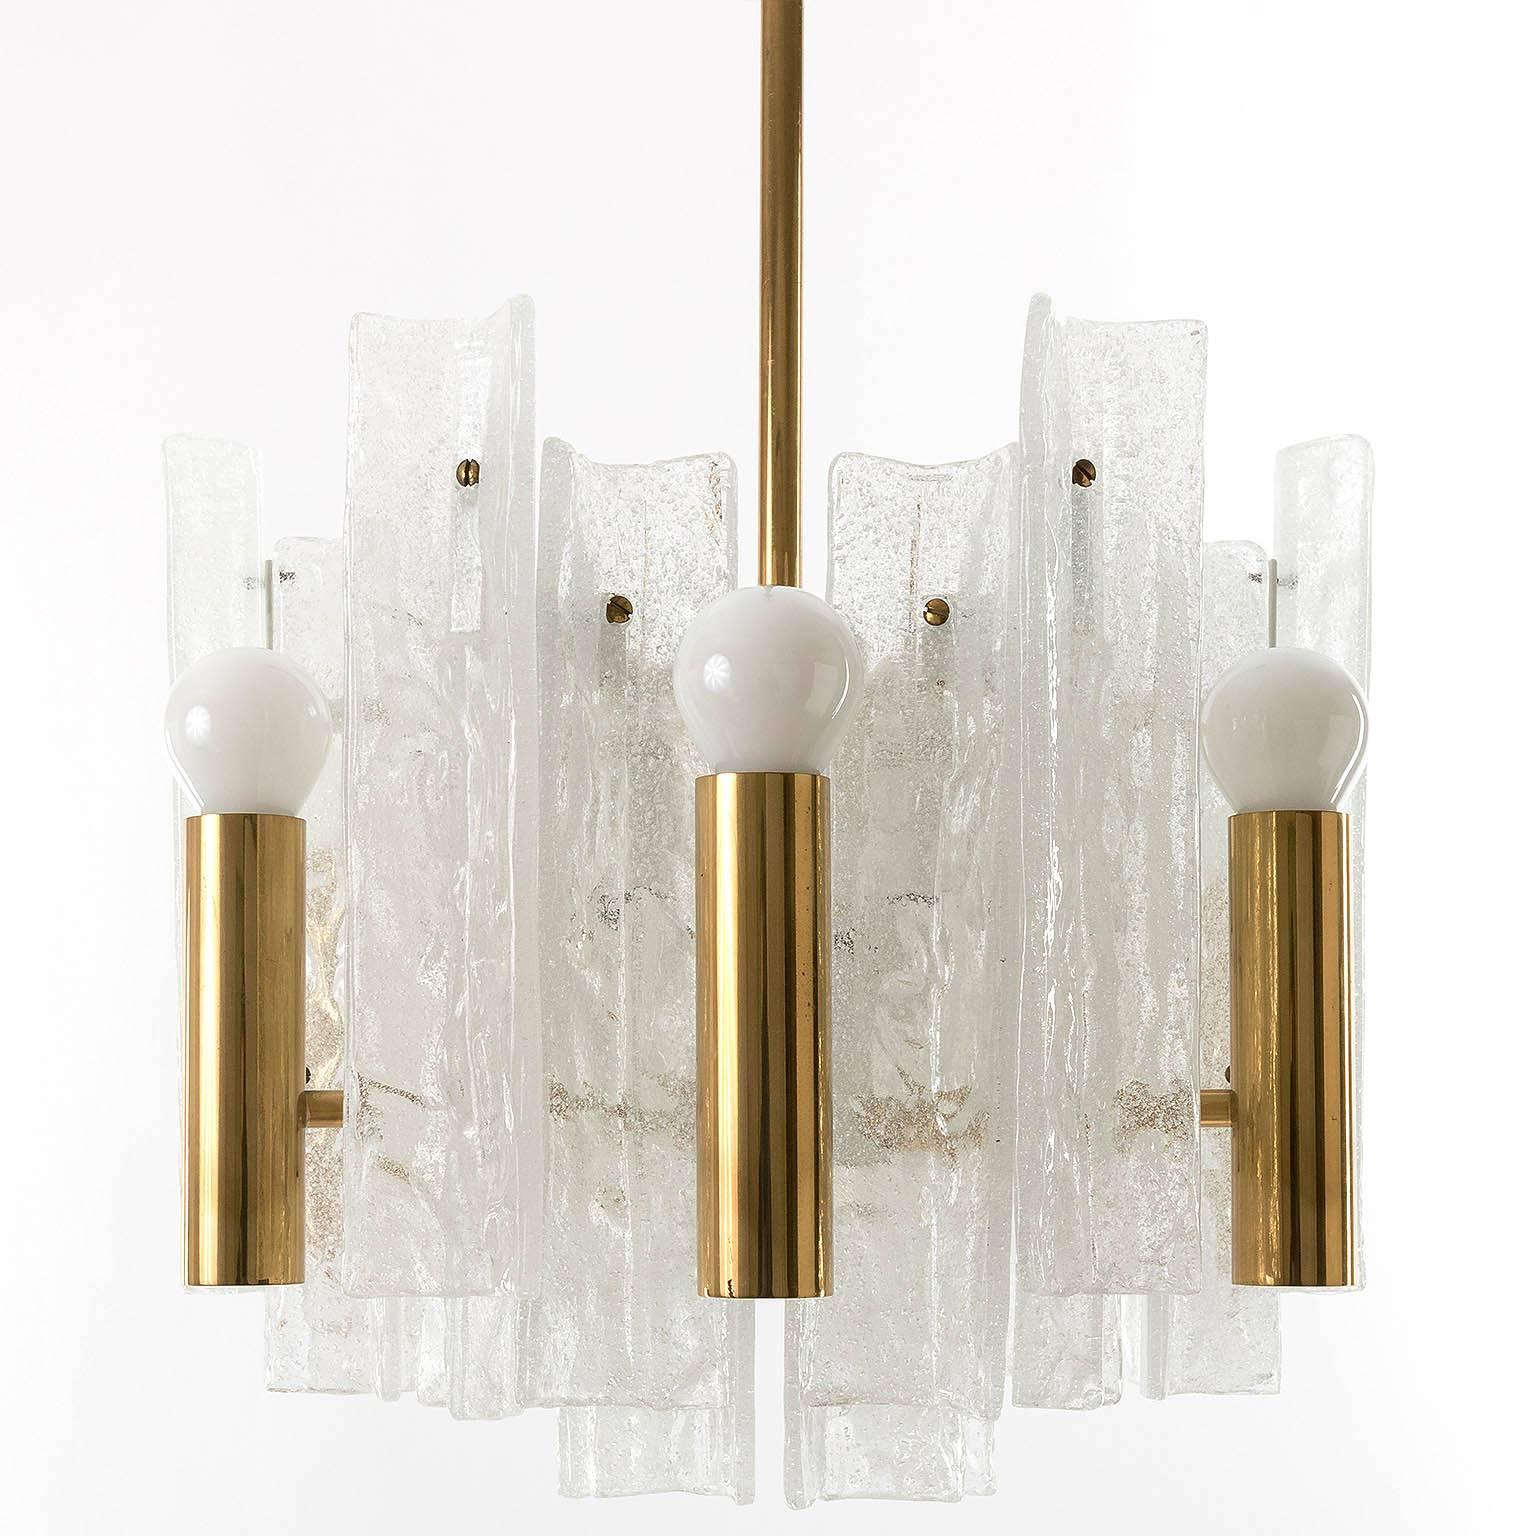 Magnifique lustre en laiton et mousse de verre texturée de Kalmar. Douze ampoules à petit culot (six dirigées vers le haut et six vers le bas). Fonctionne bien avec différents types d'ampoules (ampoules claires, dépolies ou demi-miroir